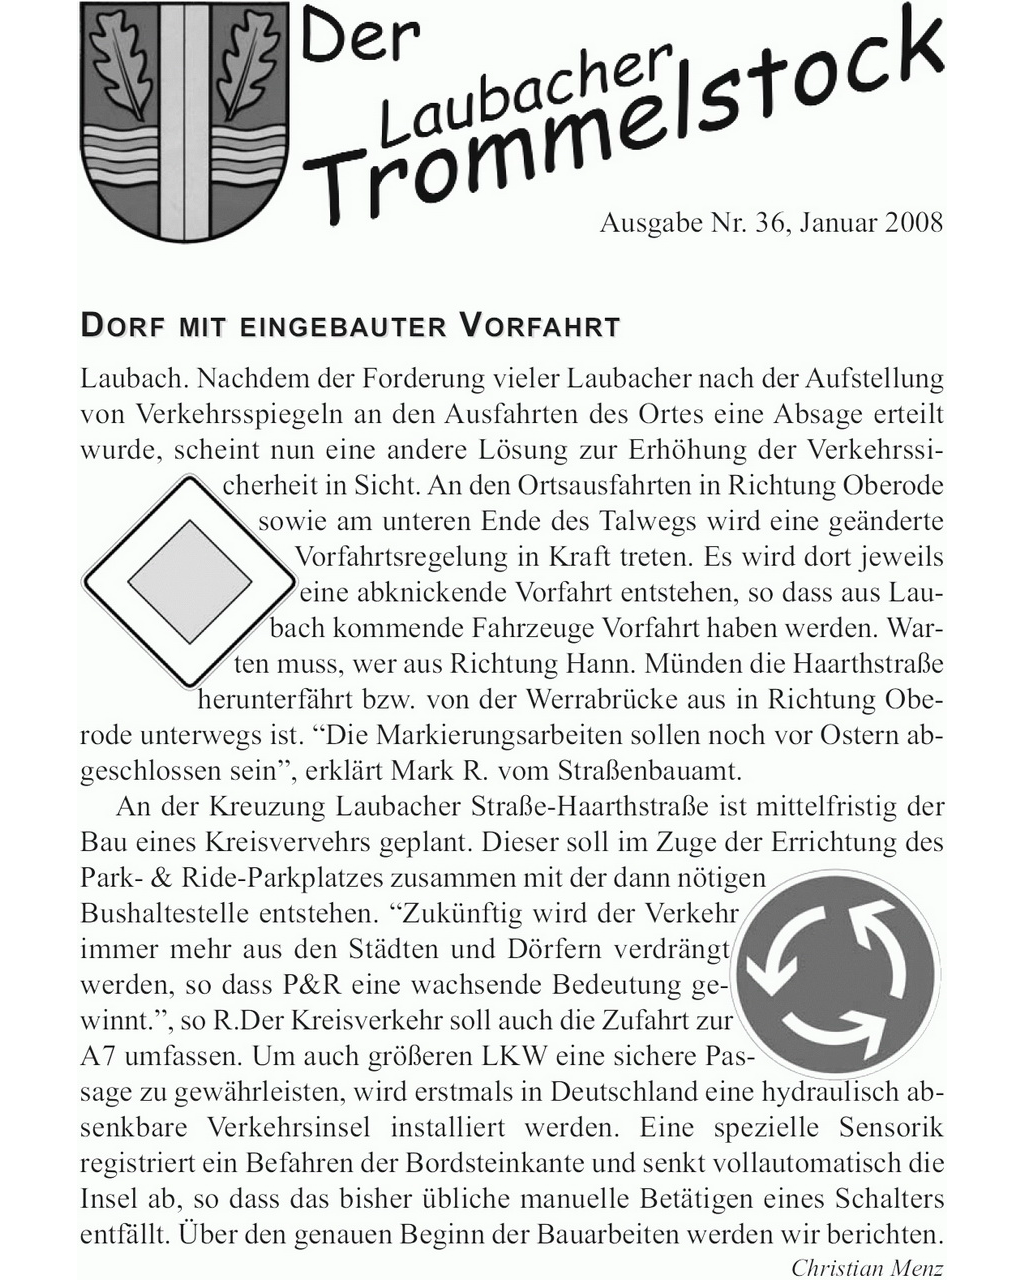 Laubacher-Trommelstock-Titelseite-036